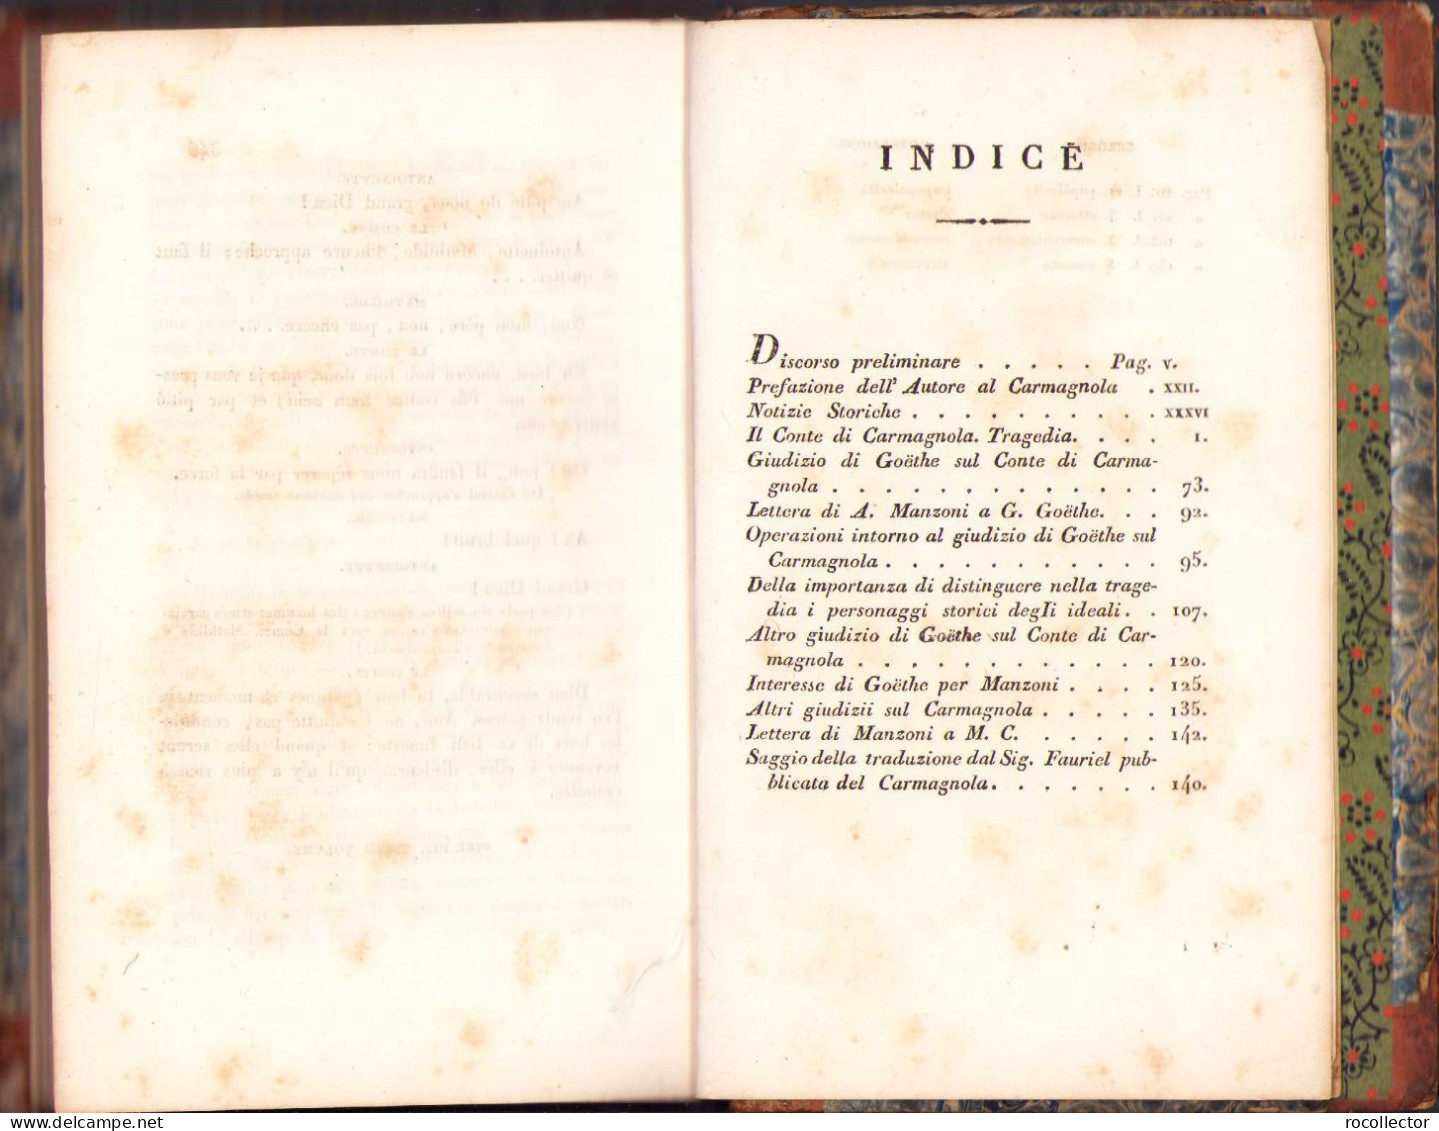 Opere di Alessandro Manzoni milanese, con aggiunte e osservazioni critiche. Prima edizione completa. Tomo primo, 1828